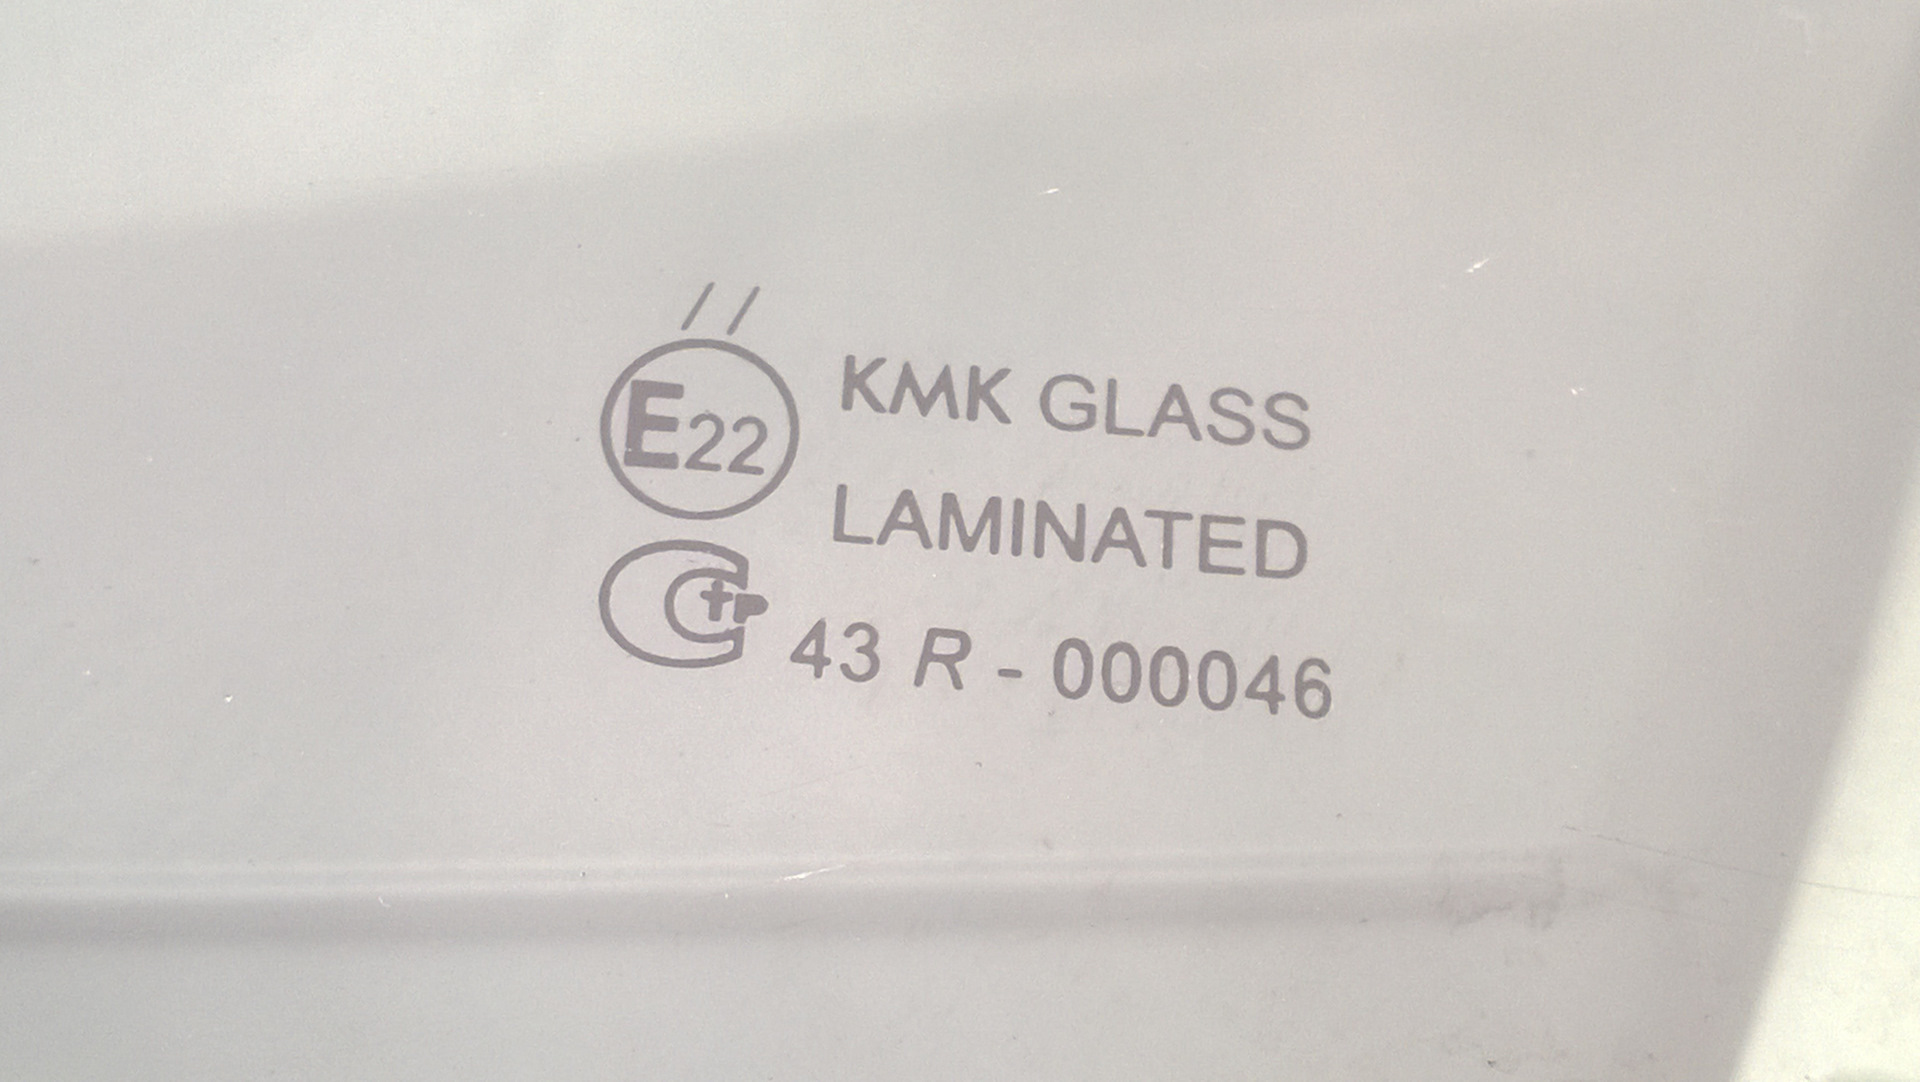 Стекла кмк отзывы. КМК стекла. Расшифровка стекол KMK. KMK стекла расшифровка. Расшифровка стекол KMK Glass.